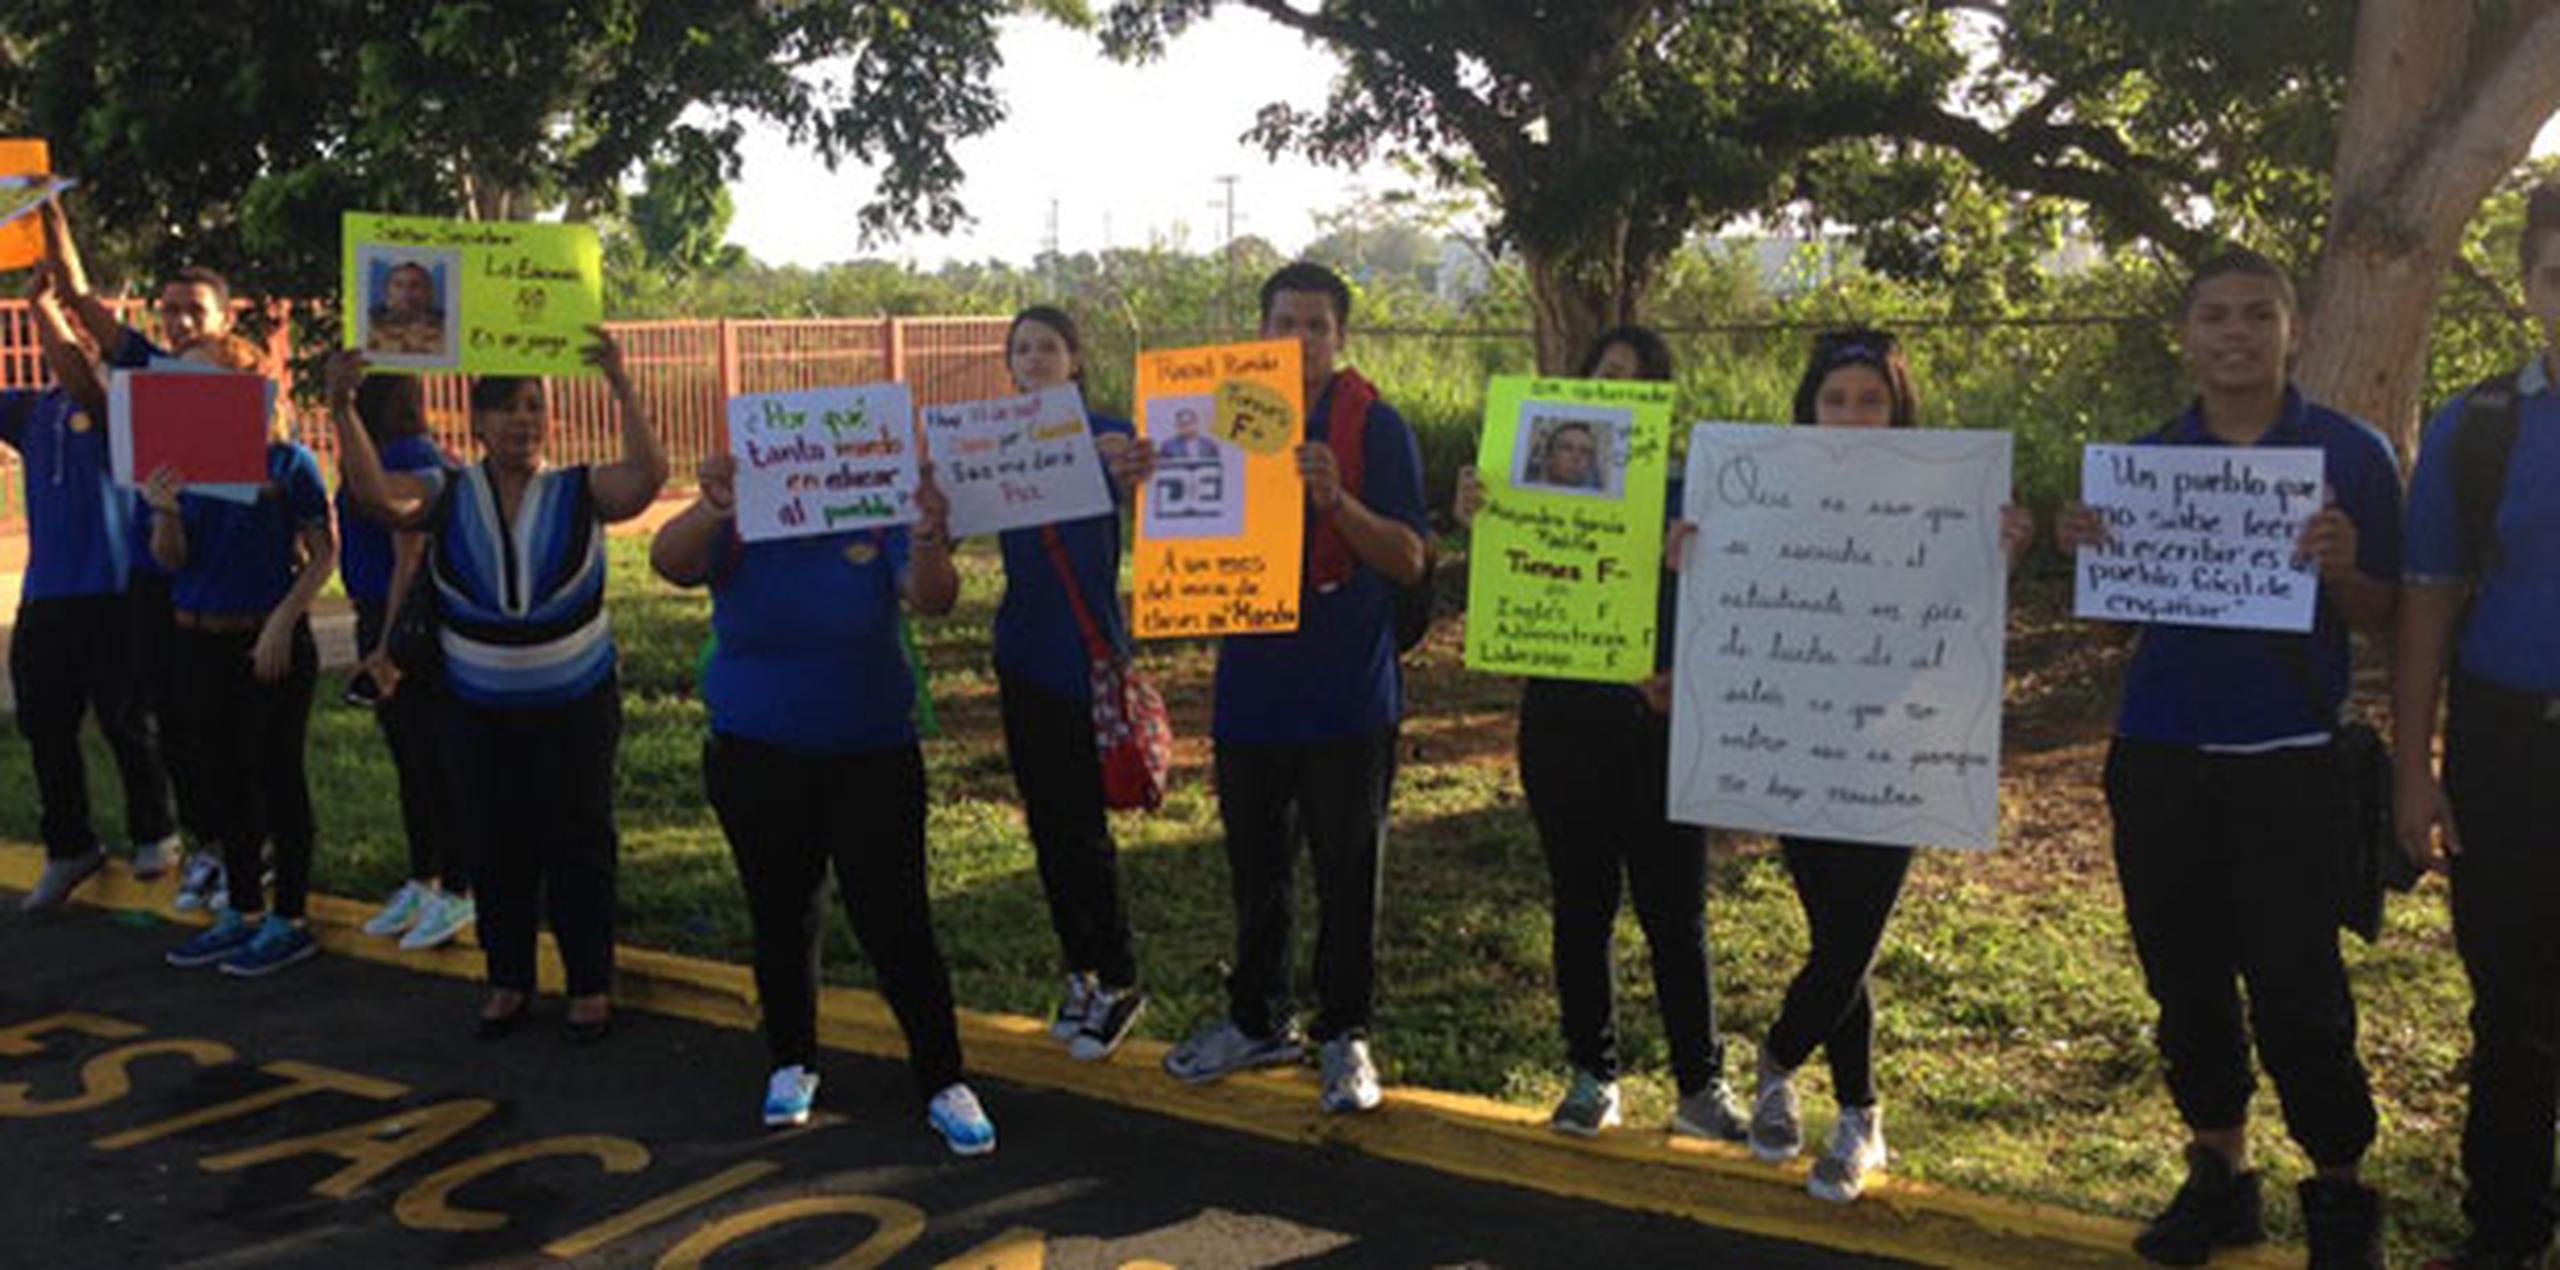 La escuela ubica en la carretera PR-2 Km 112 del barrio Mora, donde con pancartas y altavoces la comunidad escolar ejerció su derecho de expresión para reclamar la educación que merecen.  (Suministrada)